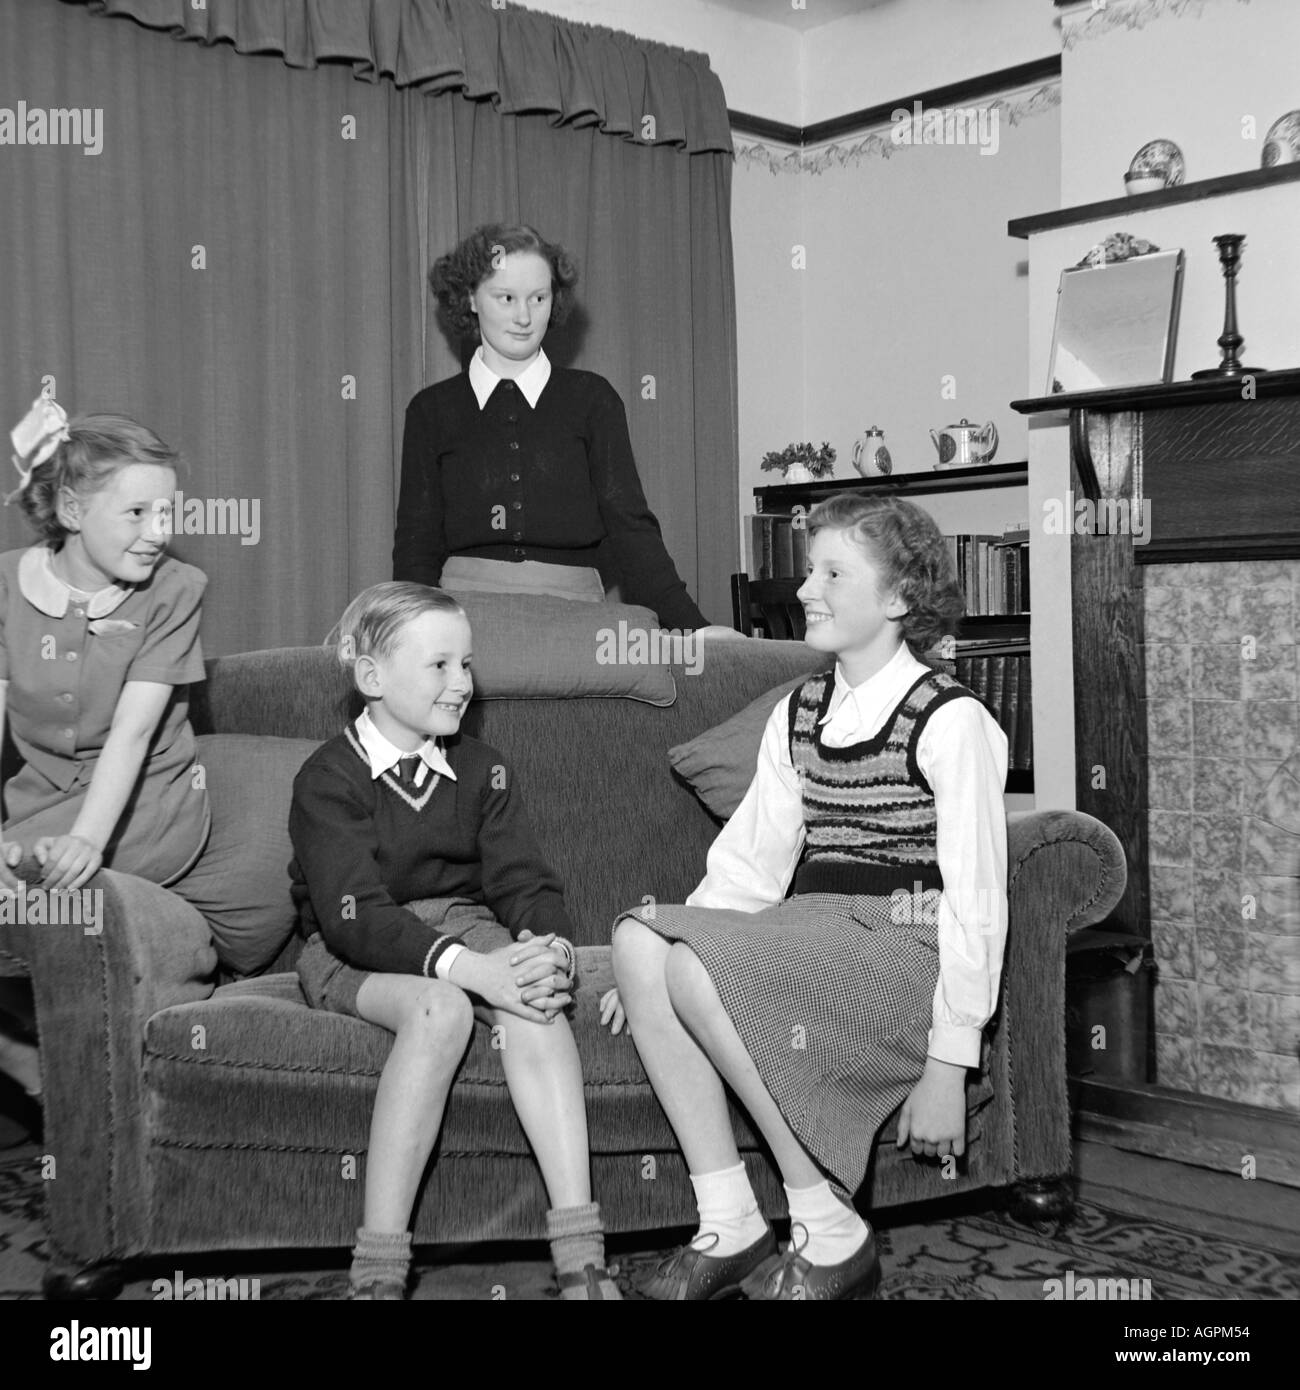 OLD VINTAGE SNAPSHOT FAMILLE PHOTOGRAPHIE DE TROIS JEUNES FILLES ET jeune garçon dans la salle de séjour vers 1950 Banque D'Images